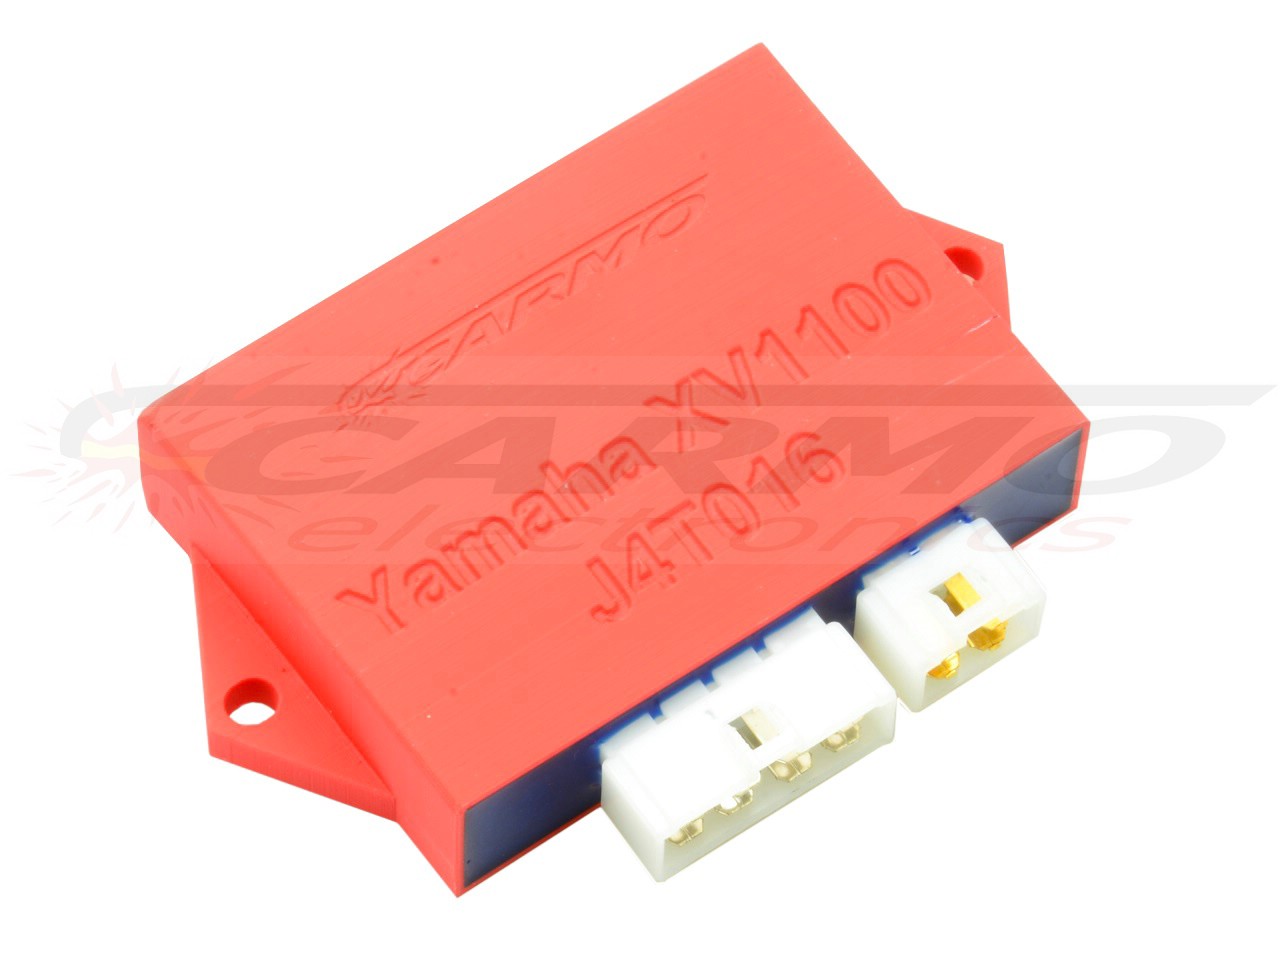 Yamaha XV1100 viragoイグナイター点火モジュールCDI/TCIボックス (J4T016) - 画像をクリックして閉じる